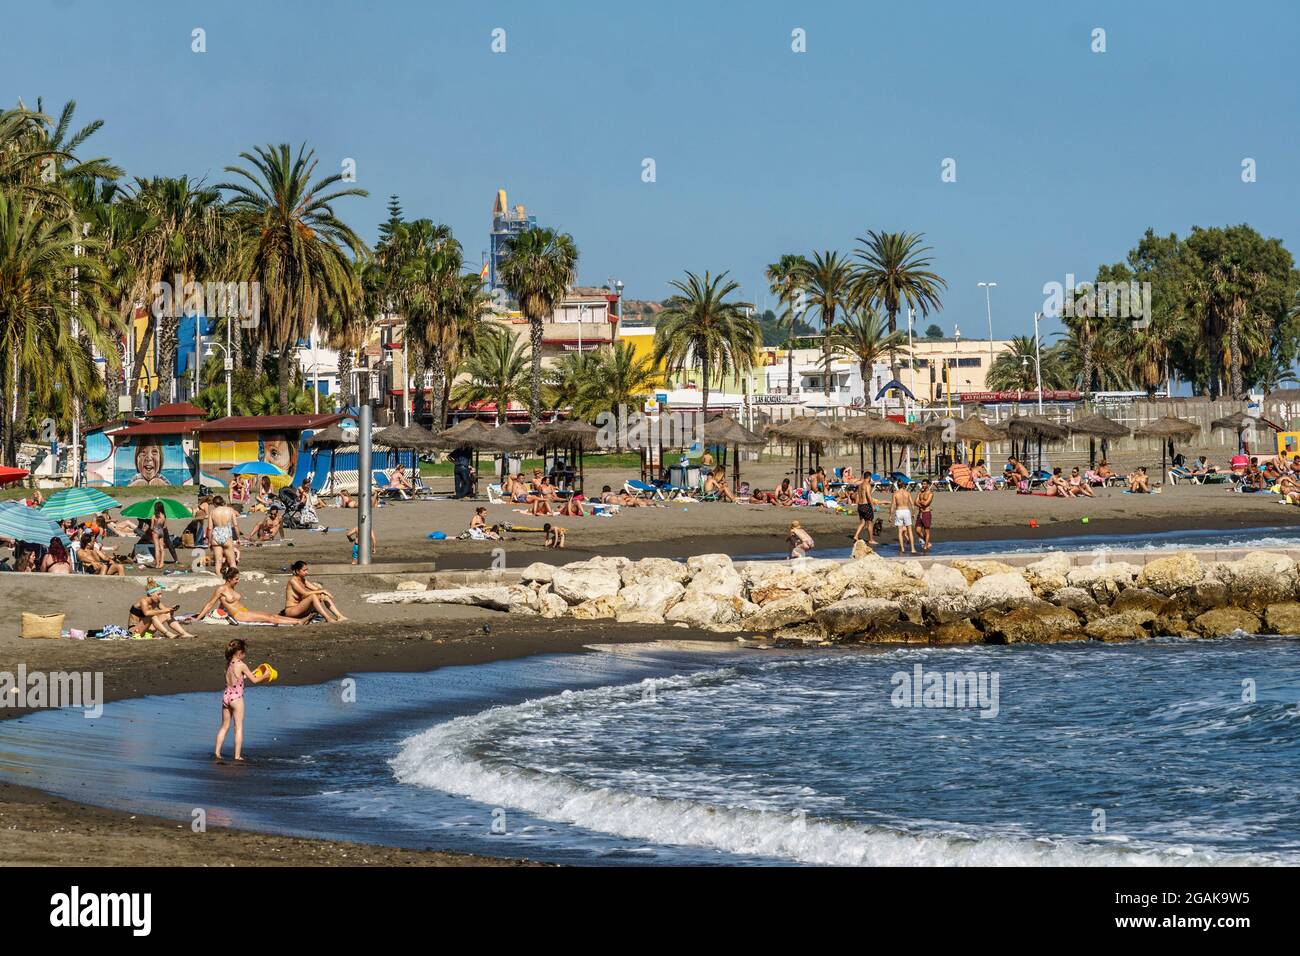 Pedregalejo Strand, Malaga, Malaga, Costa del Sol, Provinz Malaga, Andalusien, Spanien, Europa, Stock Photo